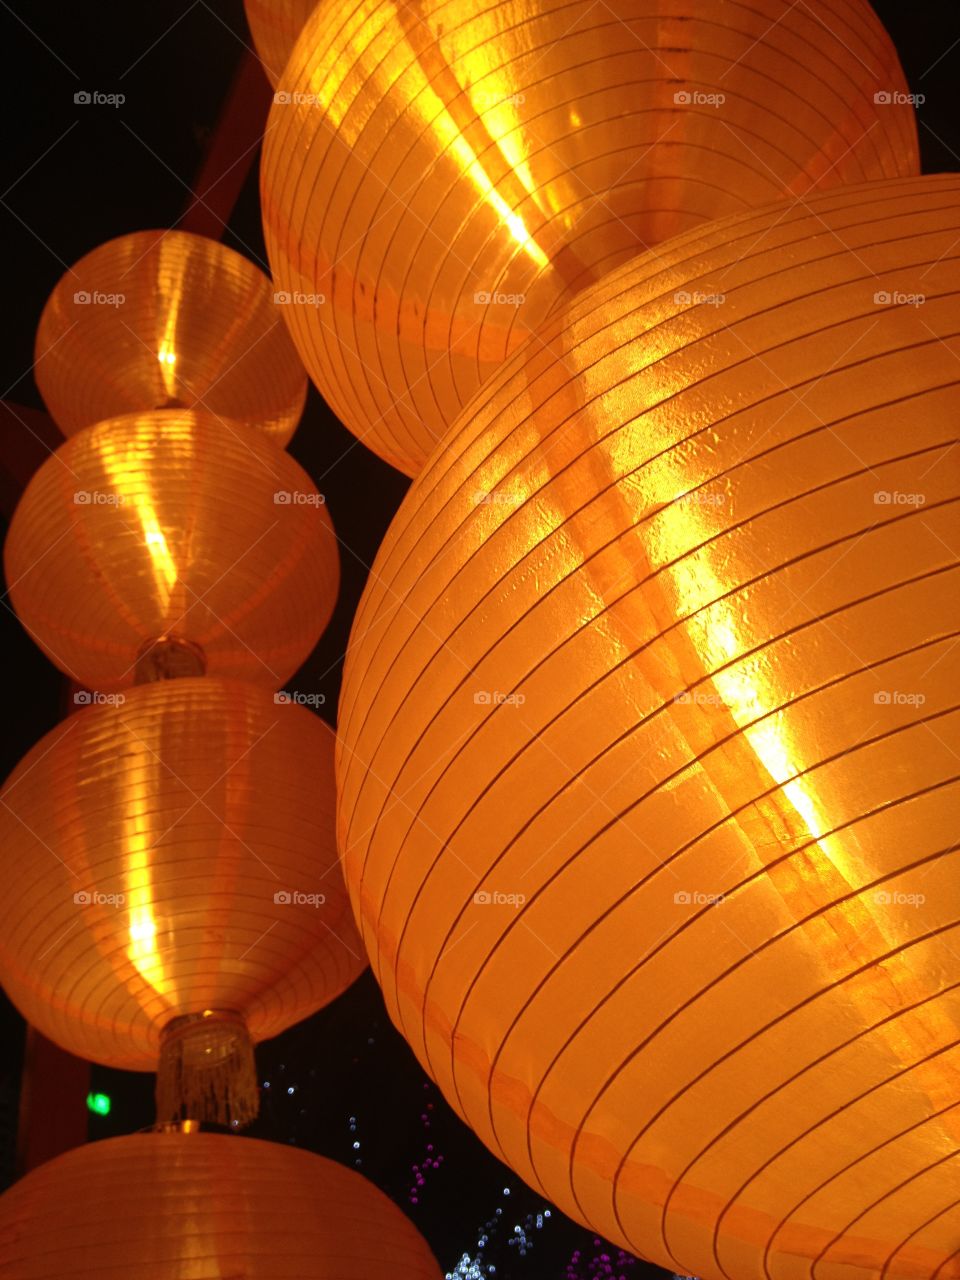 Lantern Festival of Light Hong Kong